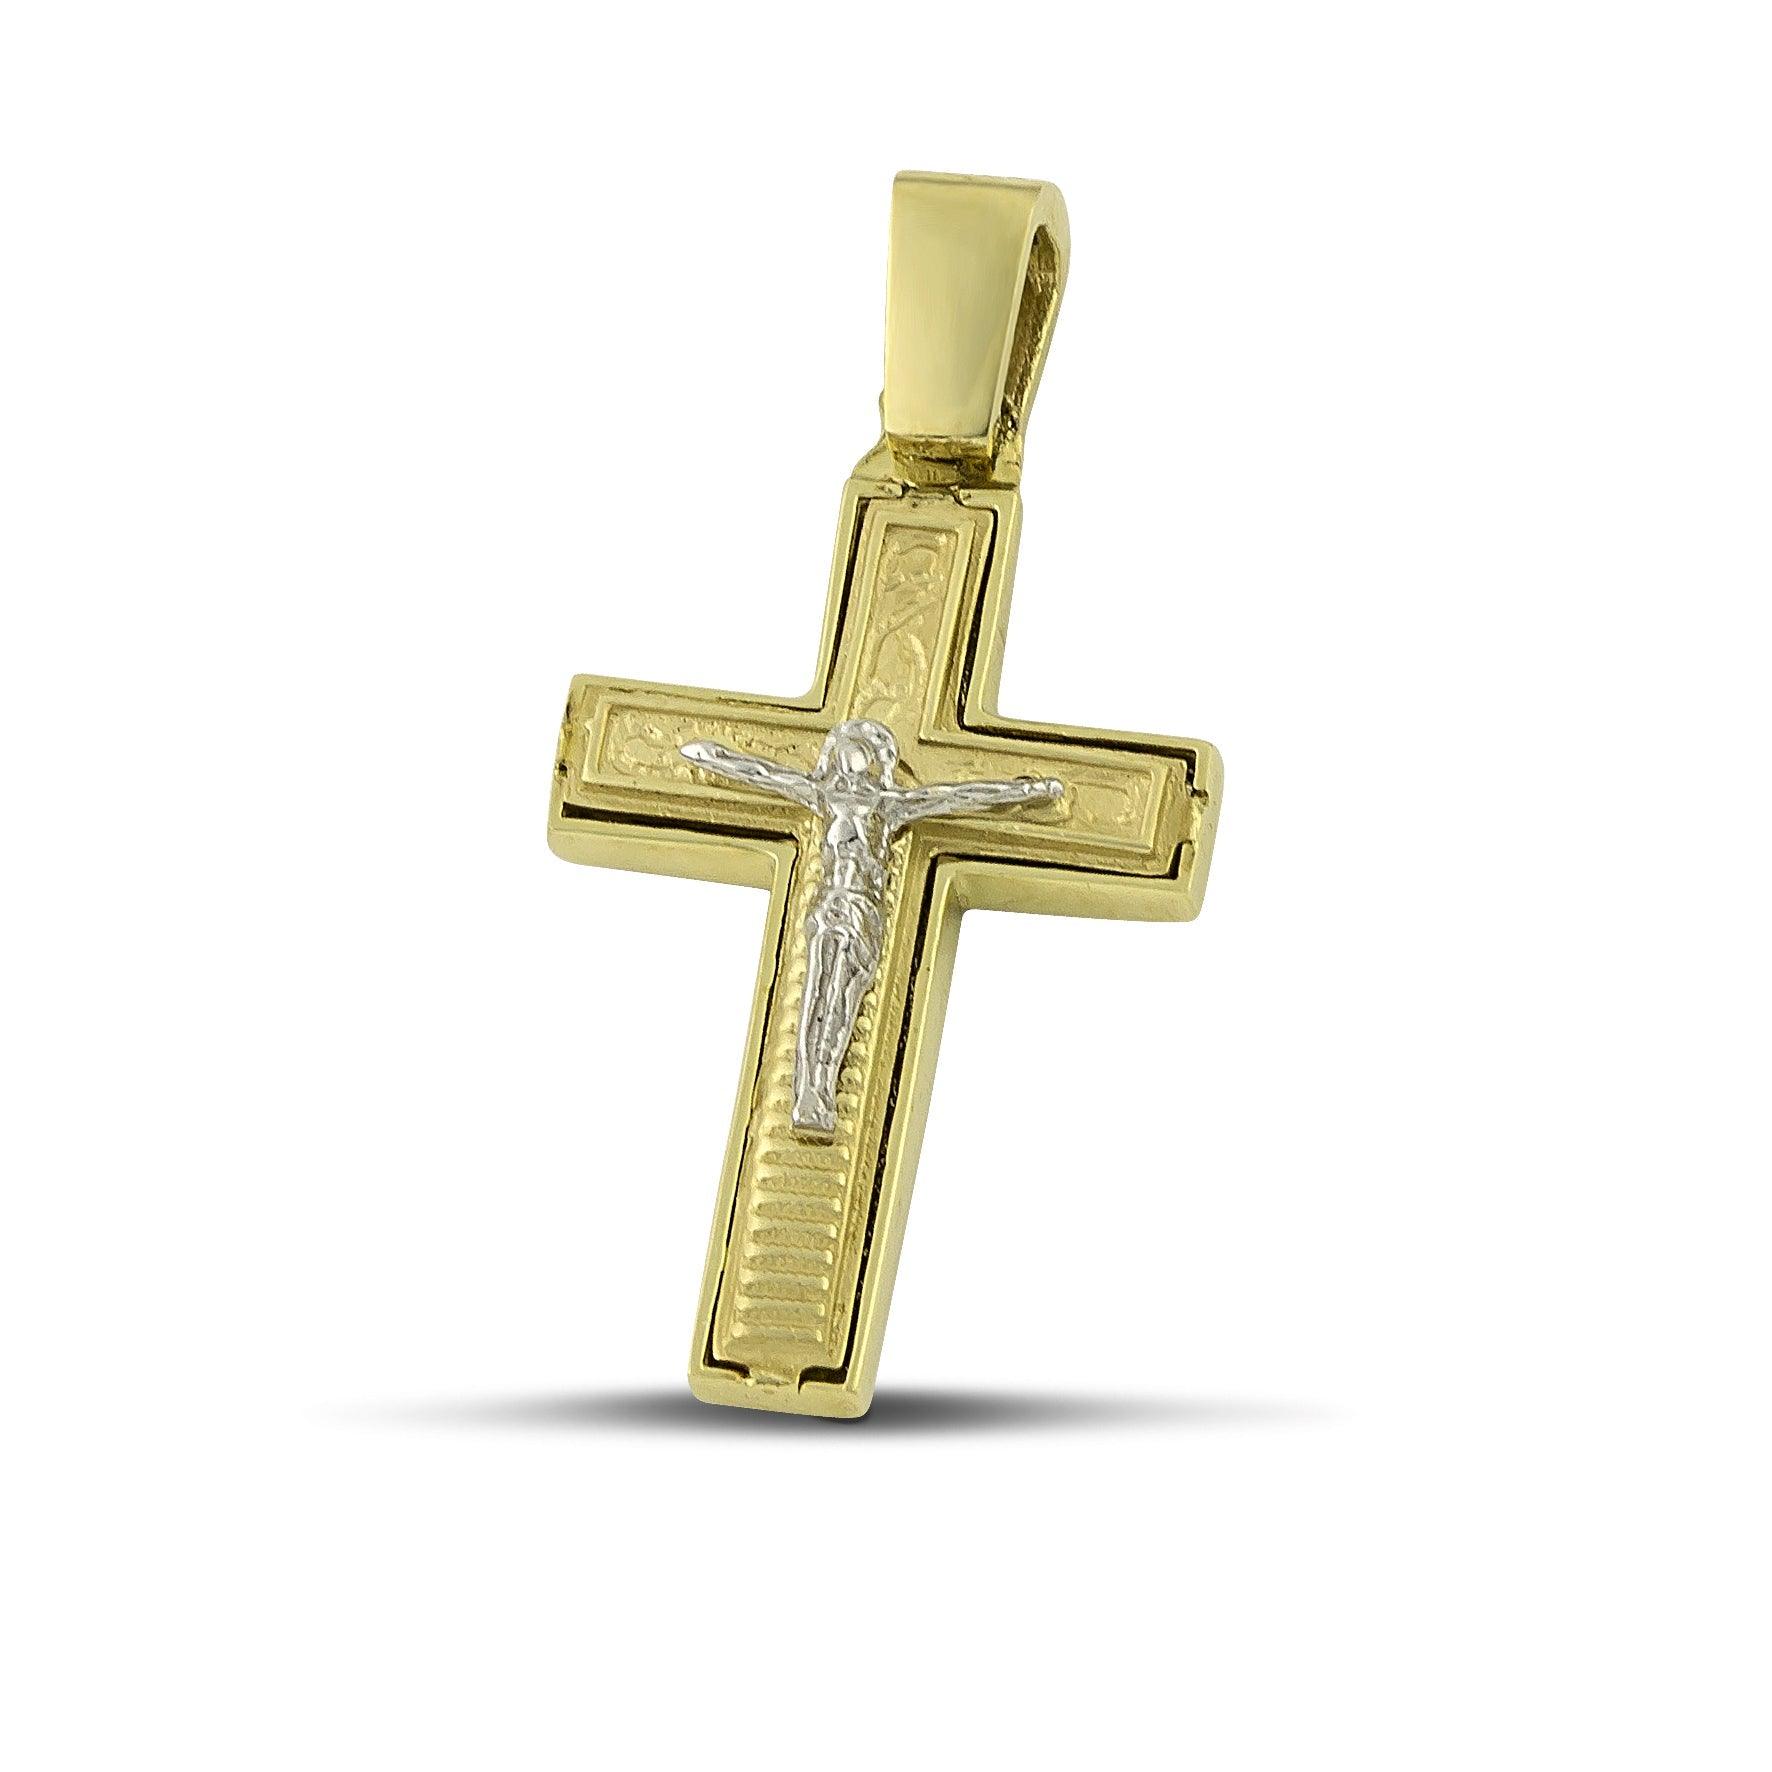 Ανδρικός χρυσός σταυρός βάπτισης Κ14 Διπλής Όψεως με τον Εσταυρωμένο.